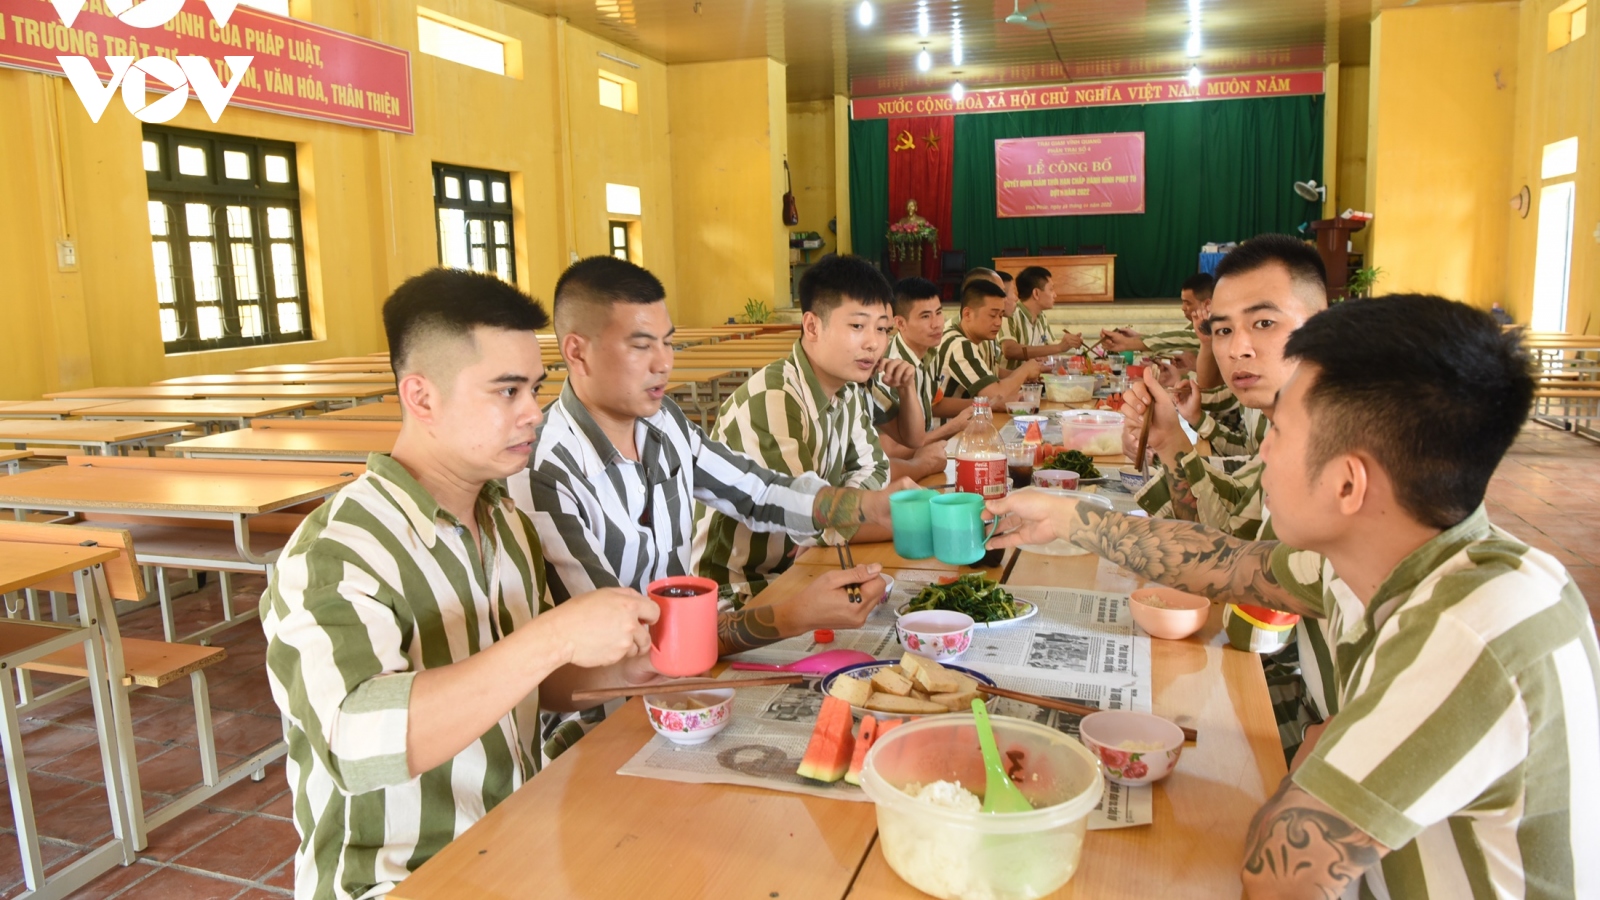 Bữa cơm đặc biệt ngày 30/4 của các phạm nhân Trại giam Vĩnh Quang